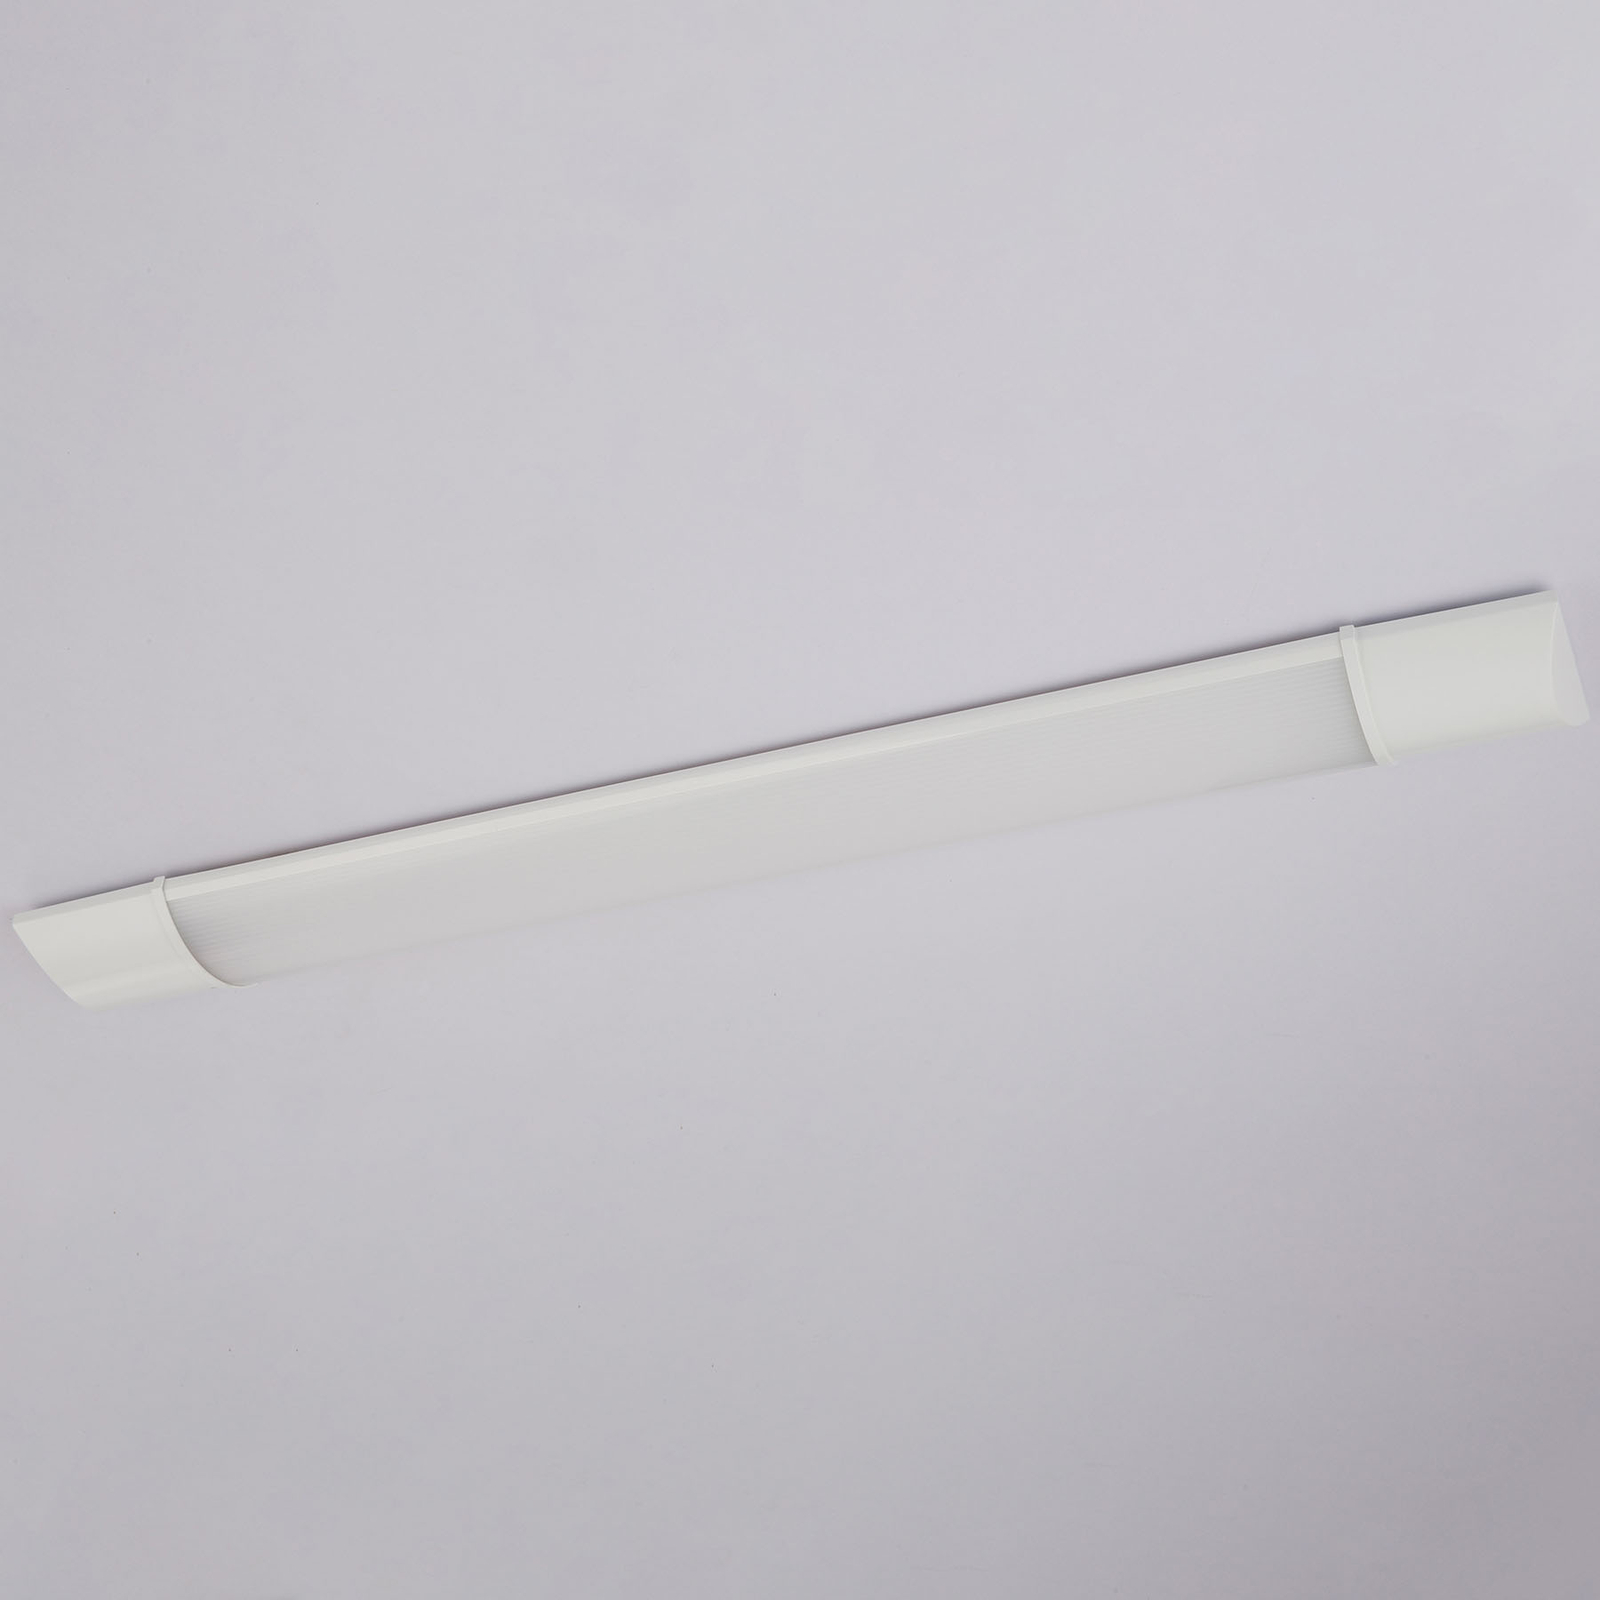 Oprawa podszafkowa LED Obara, IP20, 60 cm długości